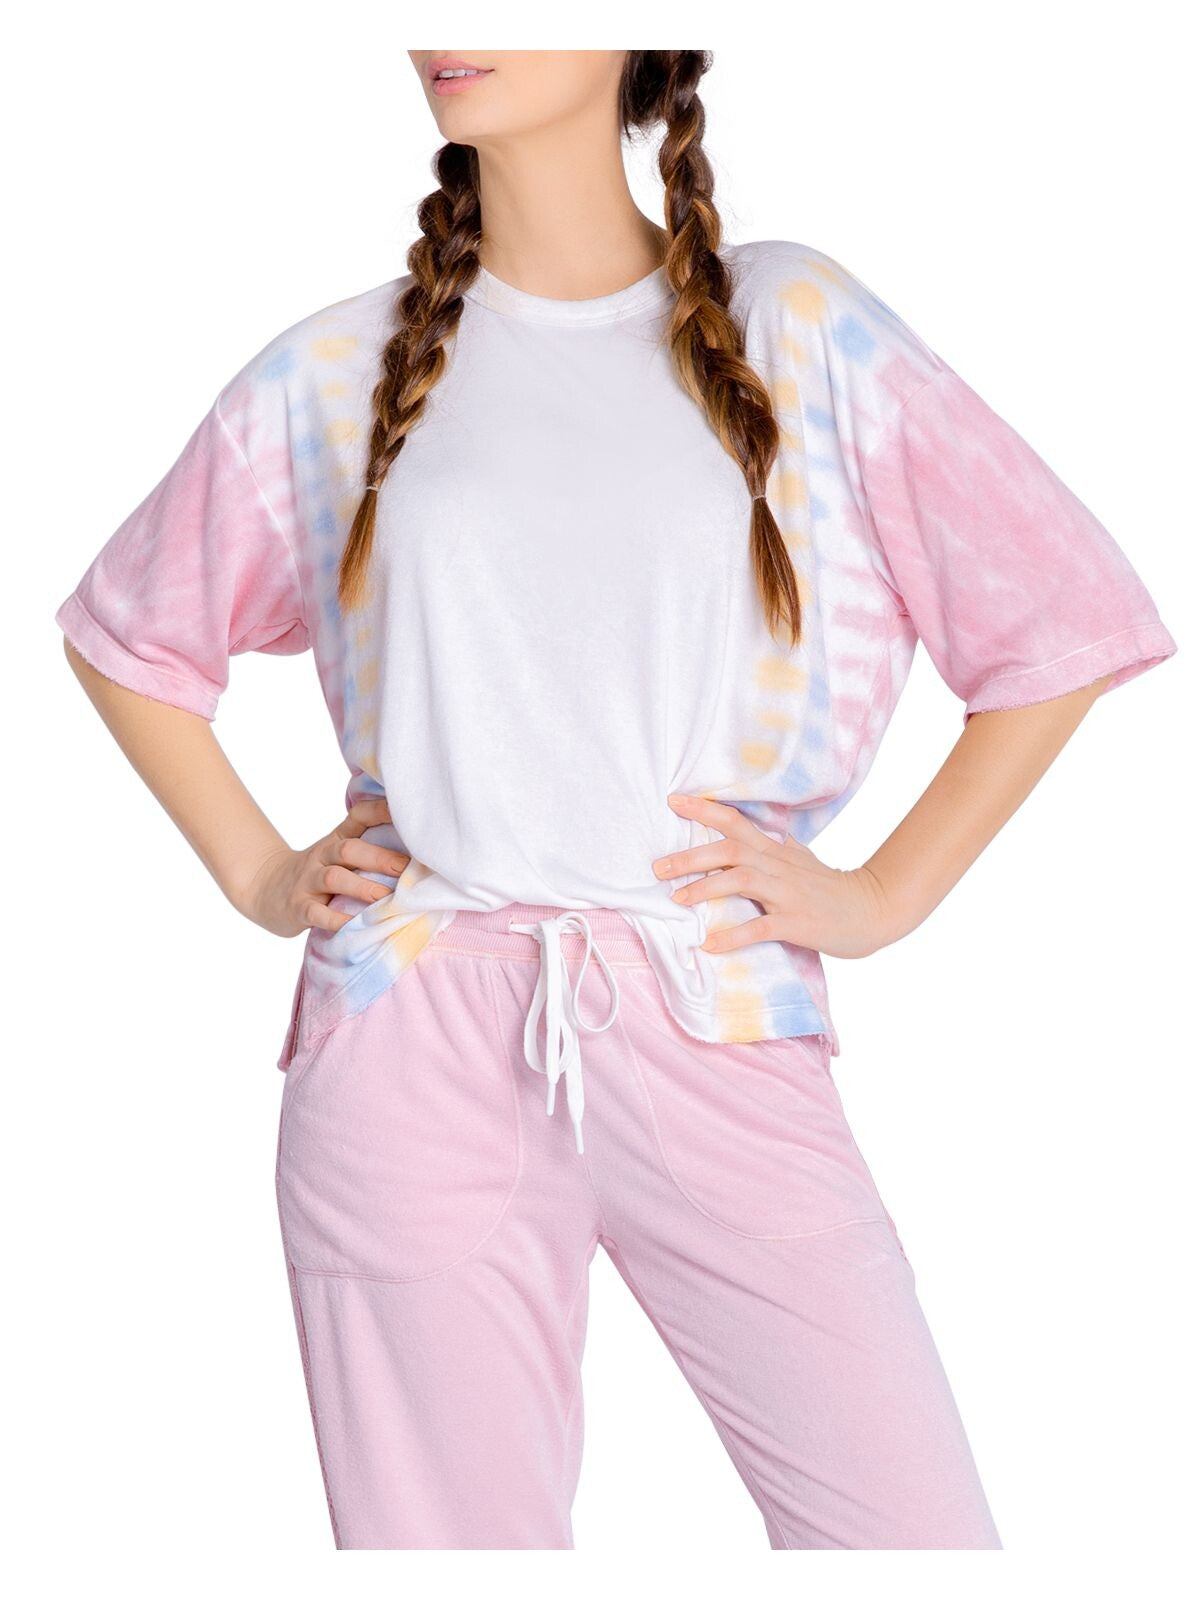 P.J.SALVAGE Intimates Ivory Knit Vented Hem Sleep Shirt Pajama Top XS